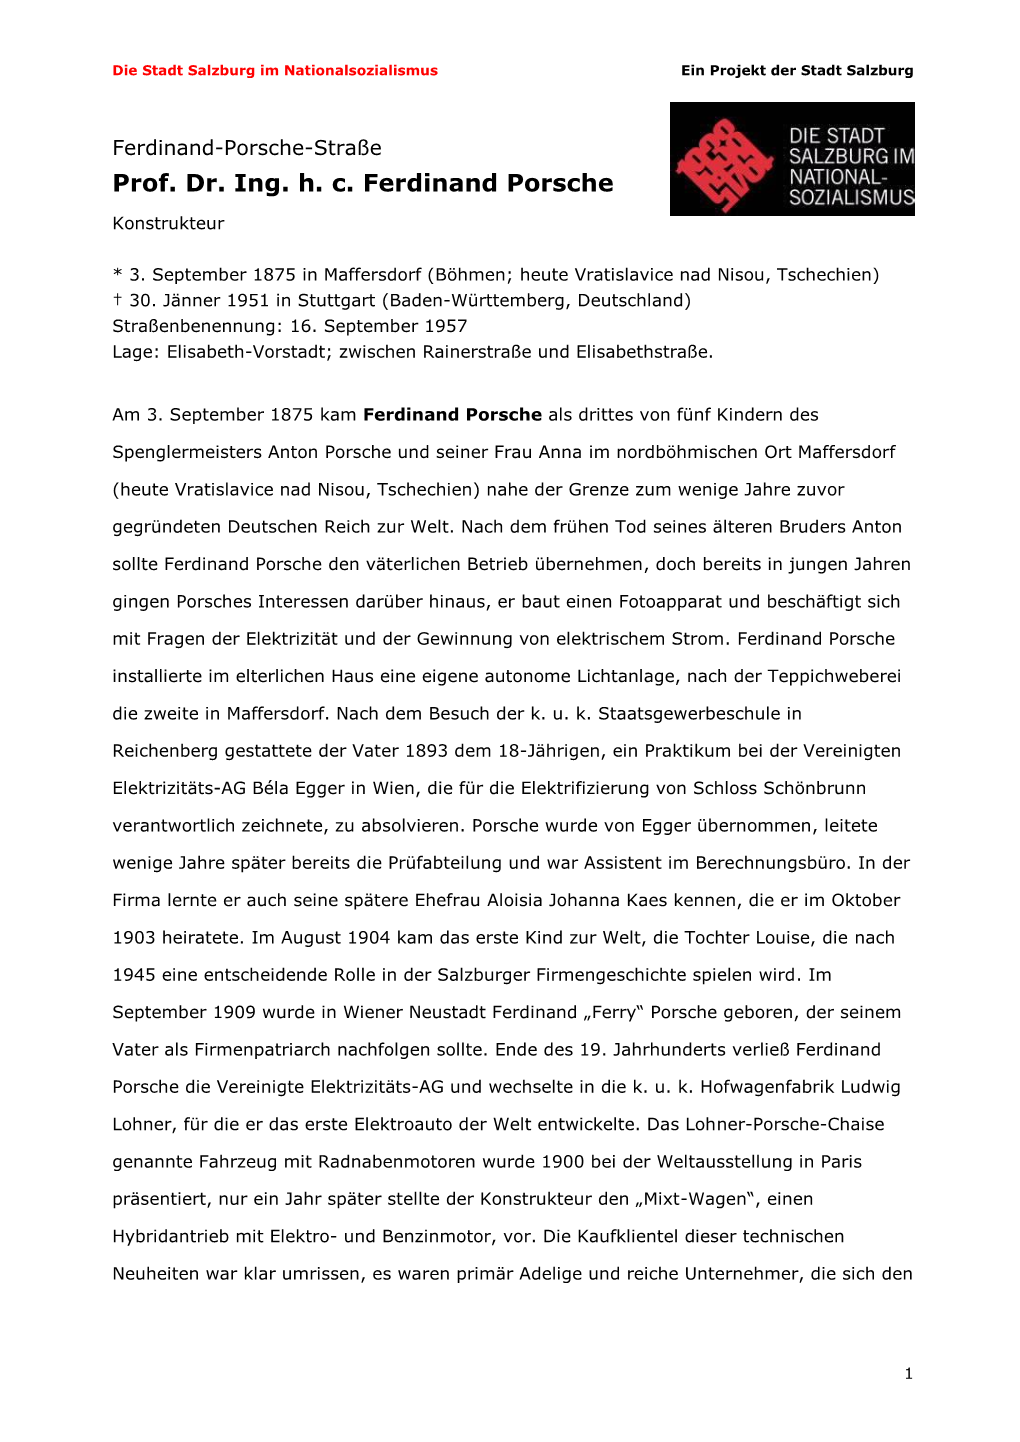 Prof. Dr. Ing. H. C. Ferdinand Porsche Pdf, 280 KB